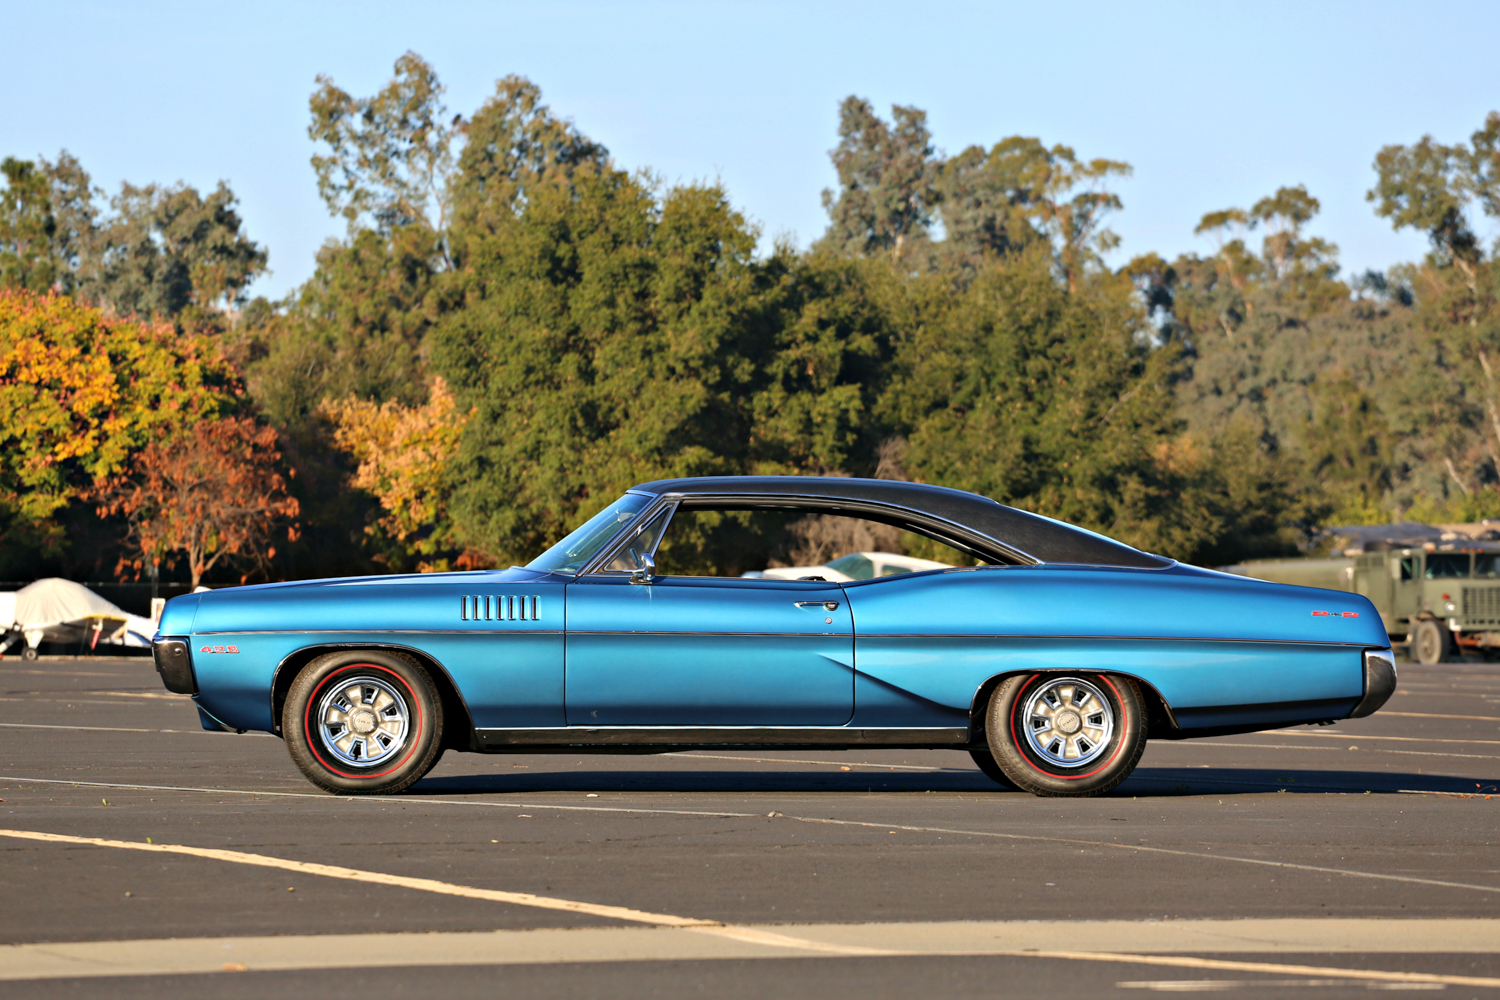 1967 Pontiac 2+2